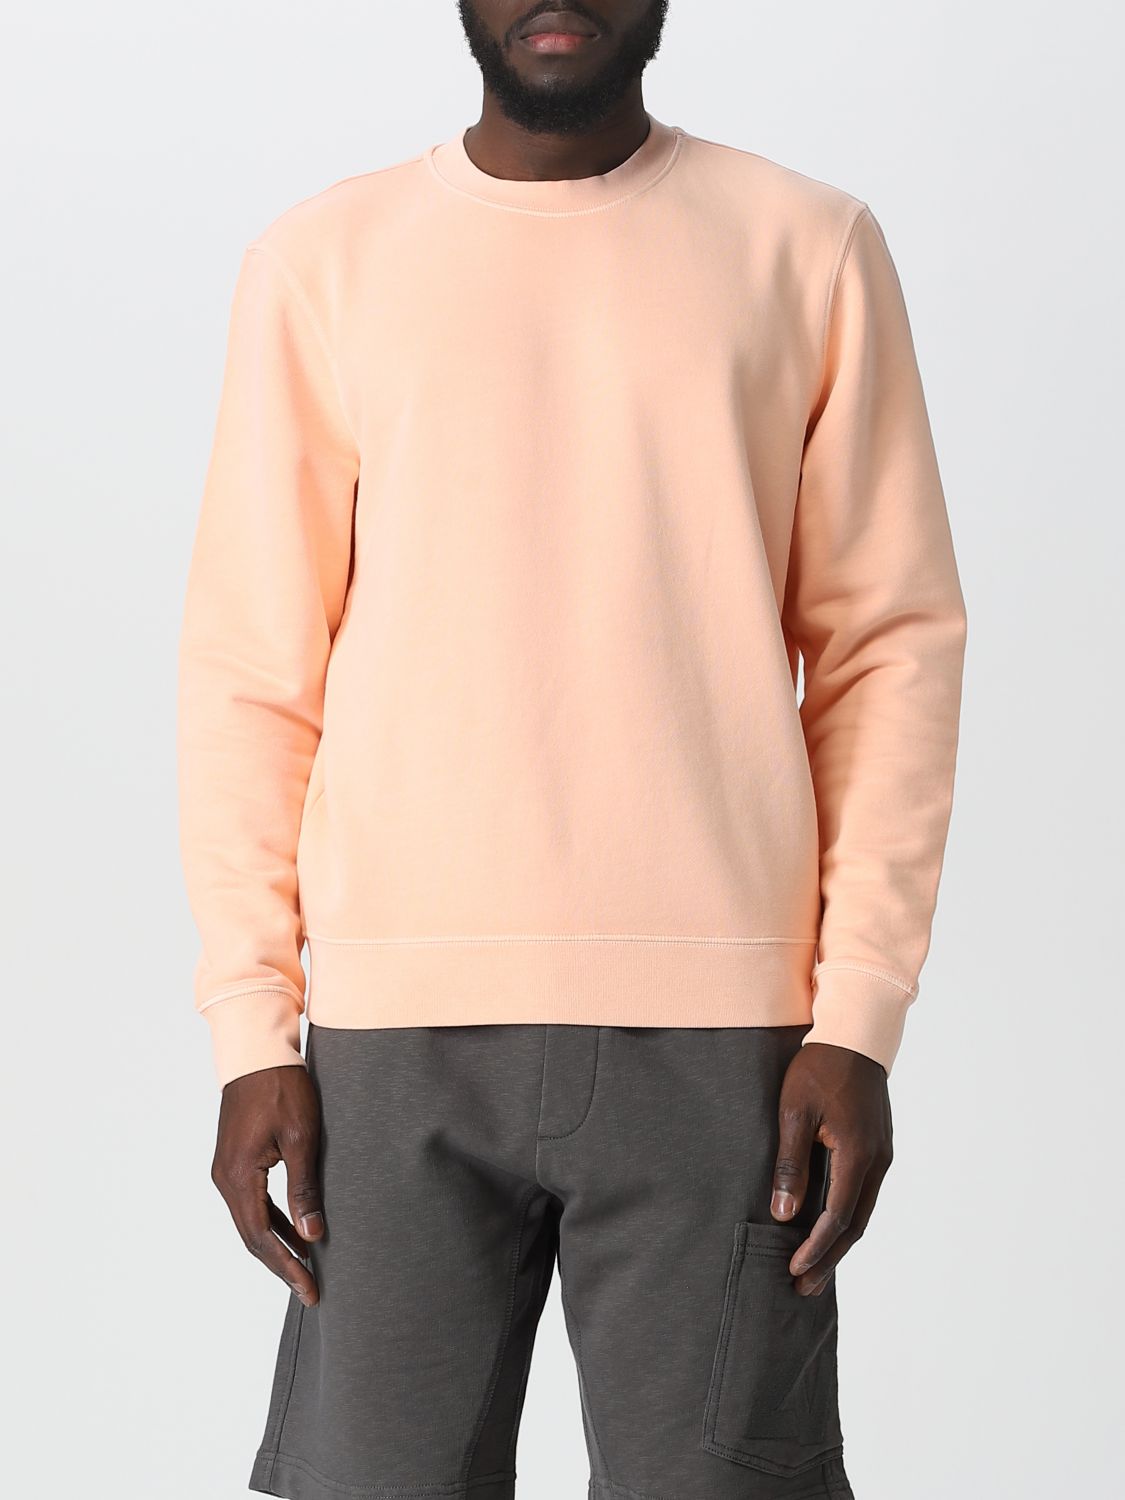 Zanone Sweatshirt  Men Color Pink